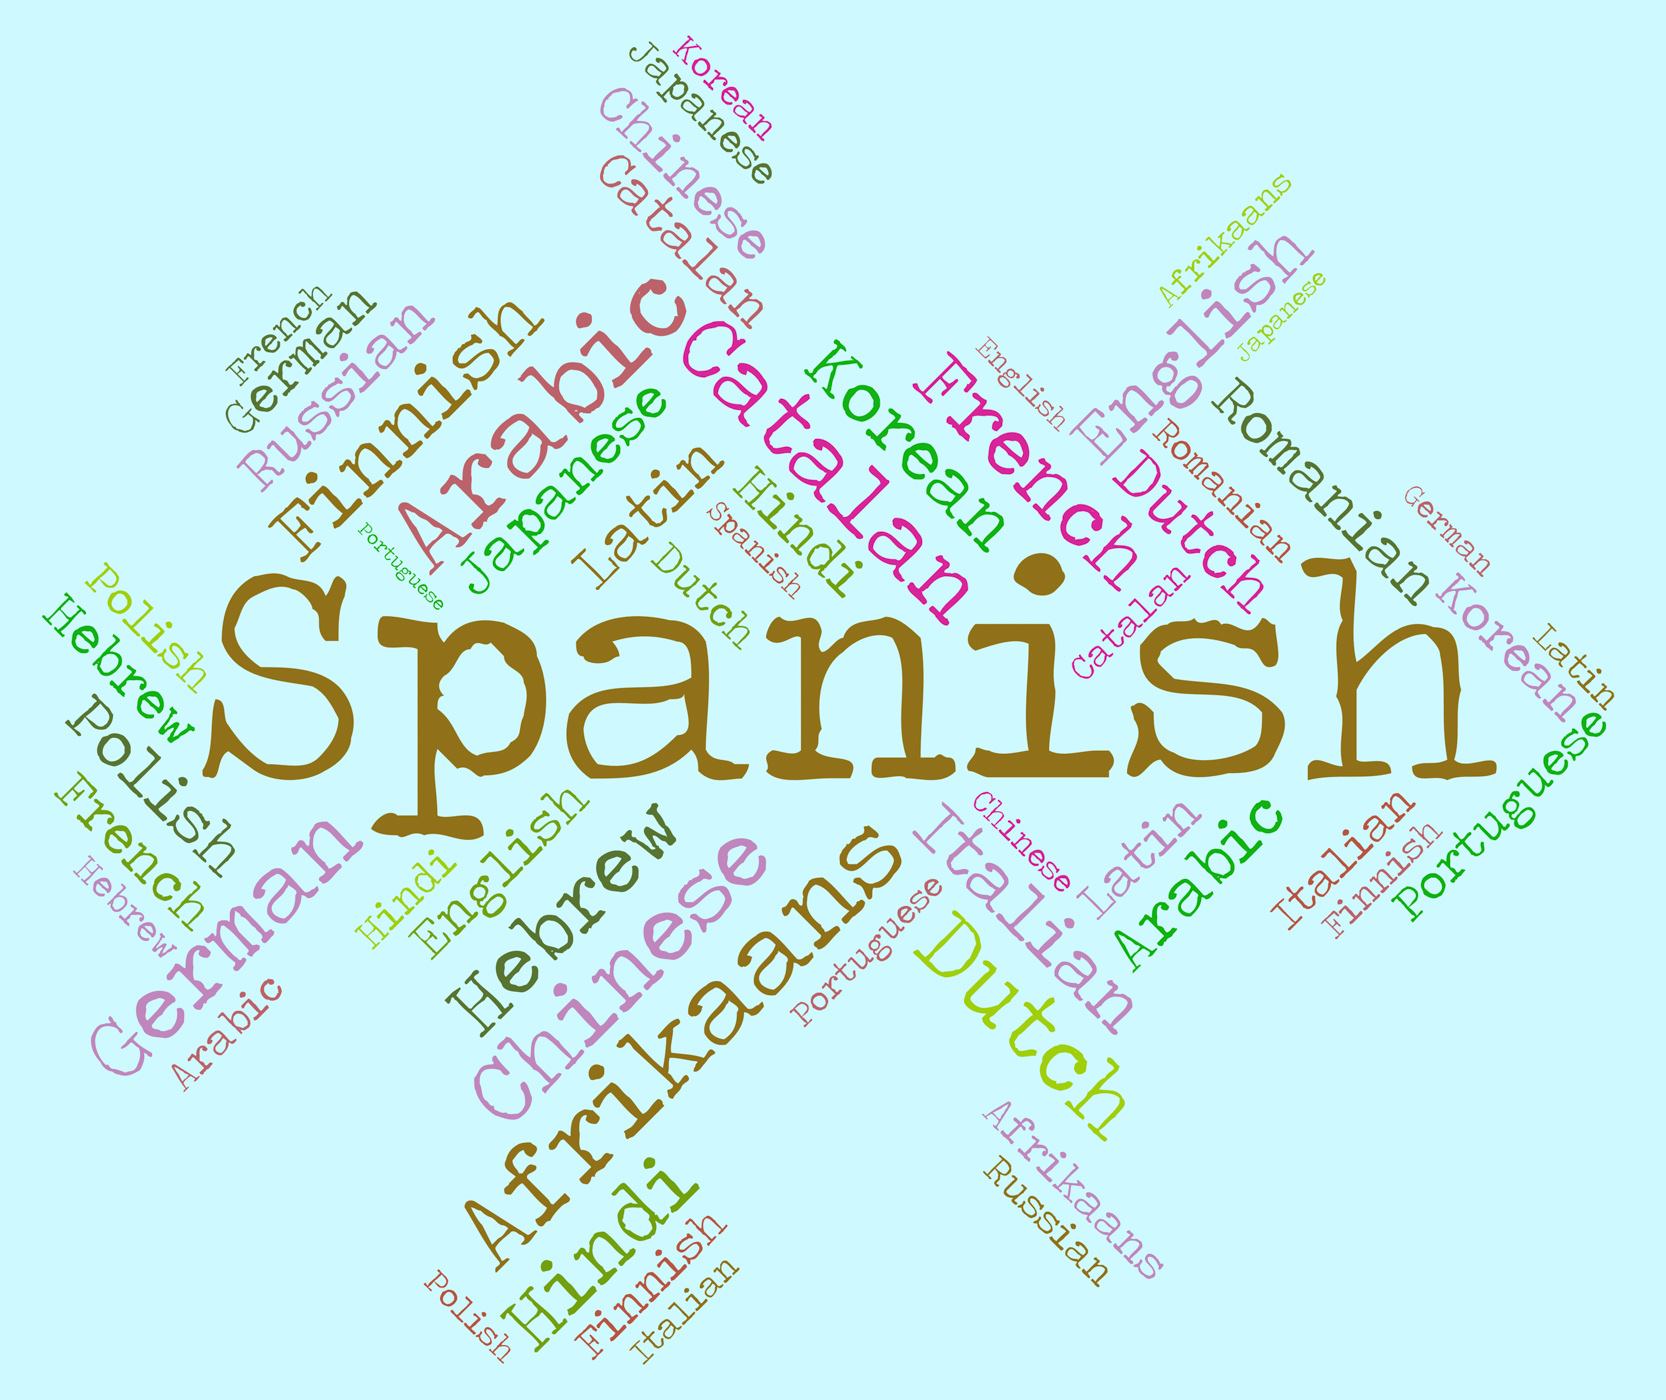 Spanish language indicates vocabulary lingo and wordcloud photo